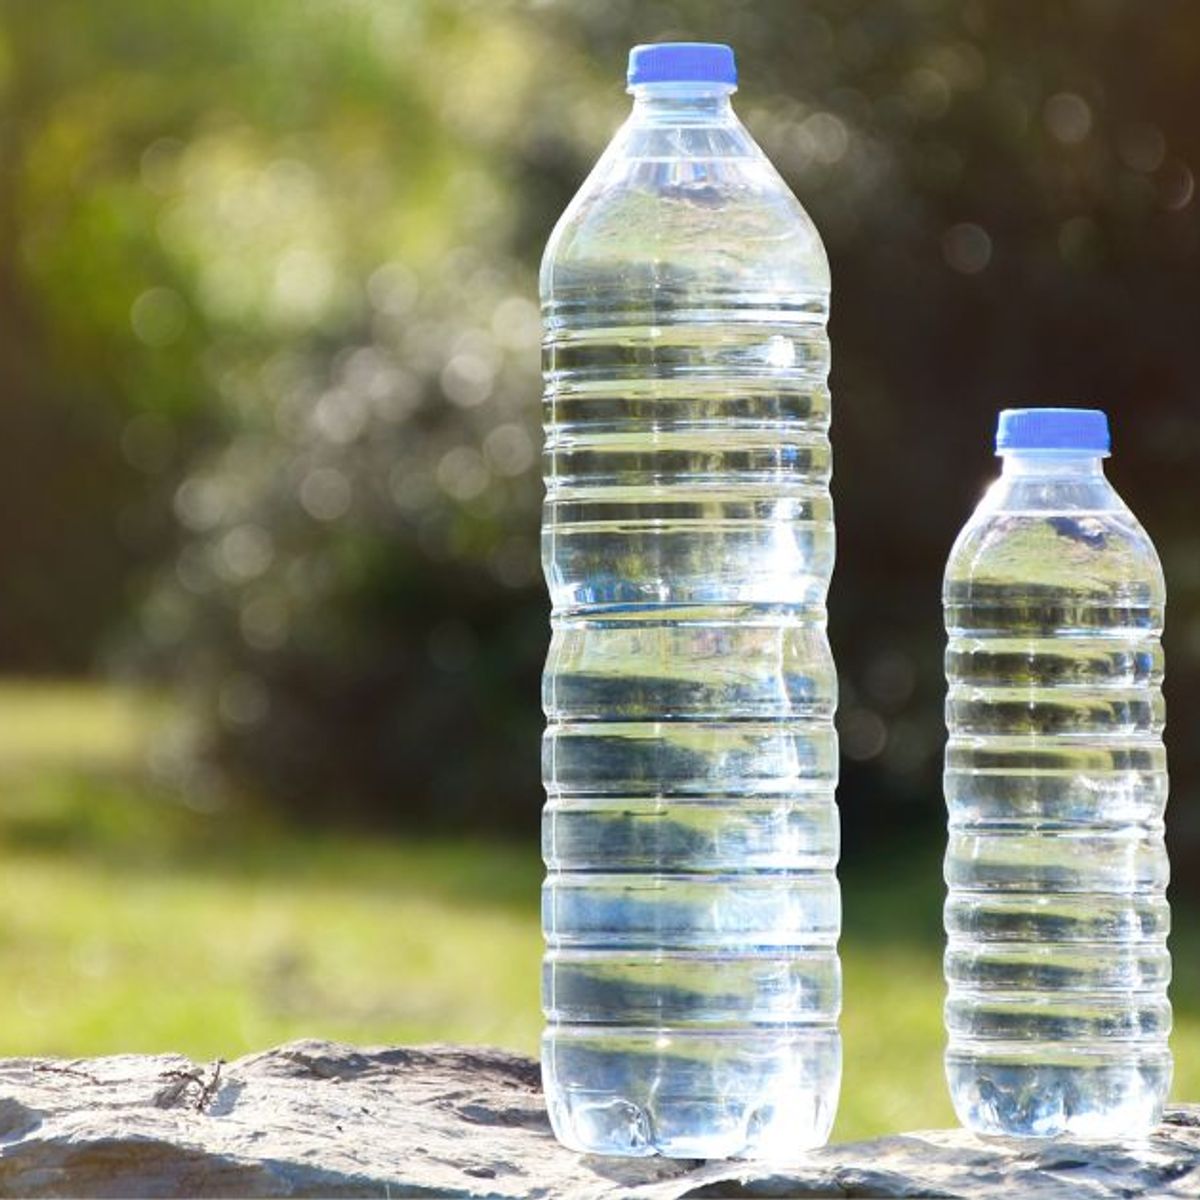 Jusqu'à quand peut-on boire une bouteille d'eau déjà ouverte ?